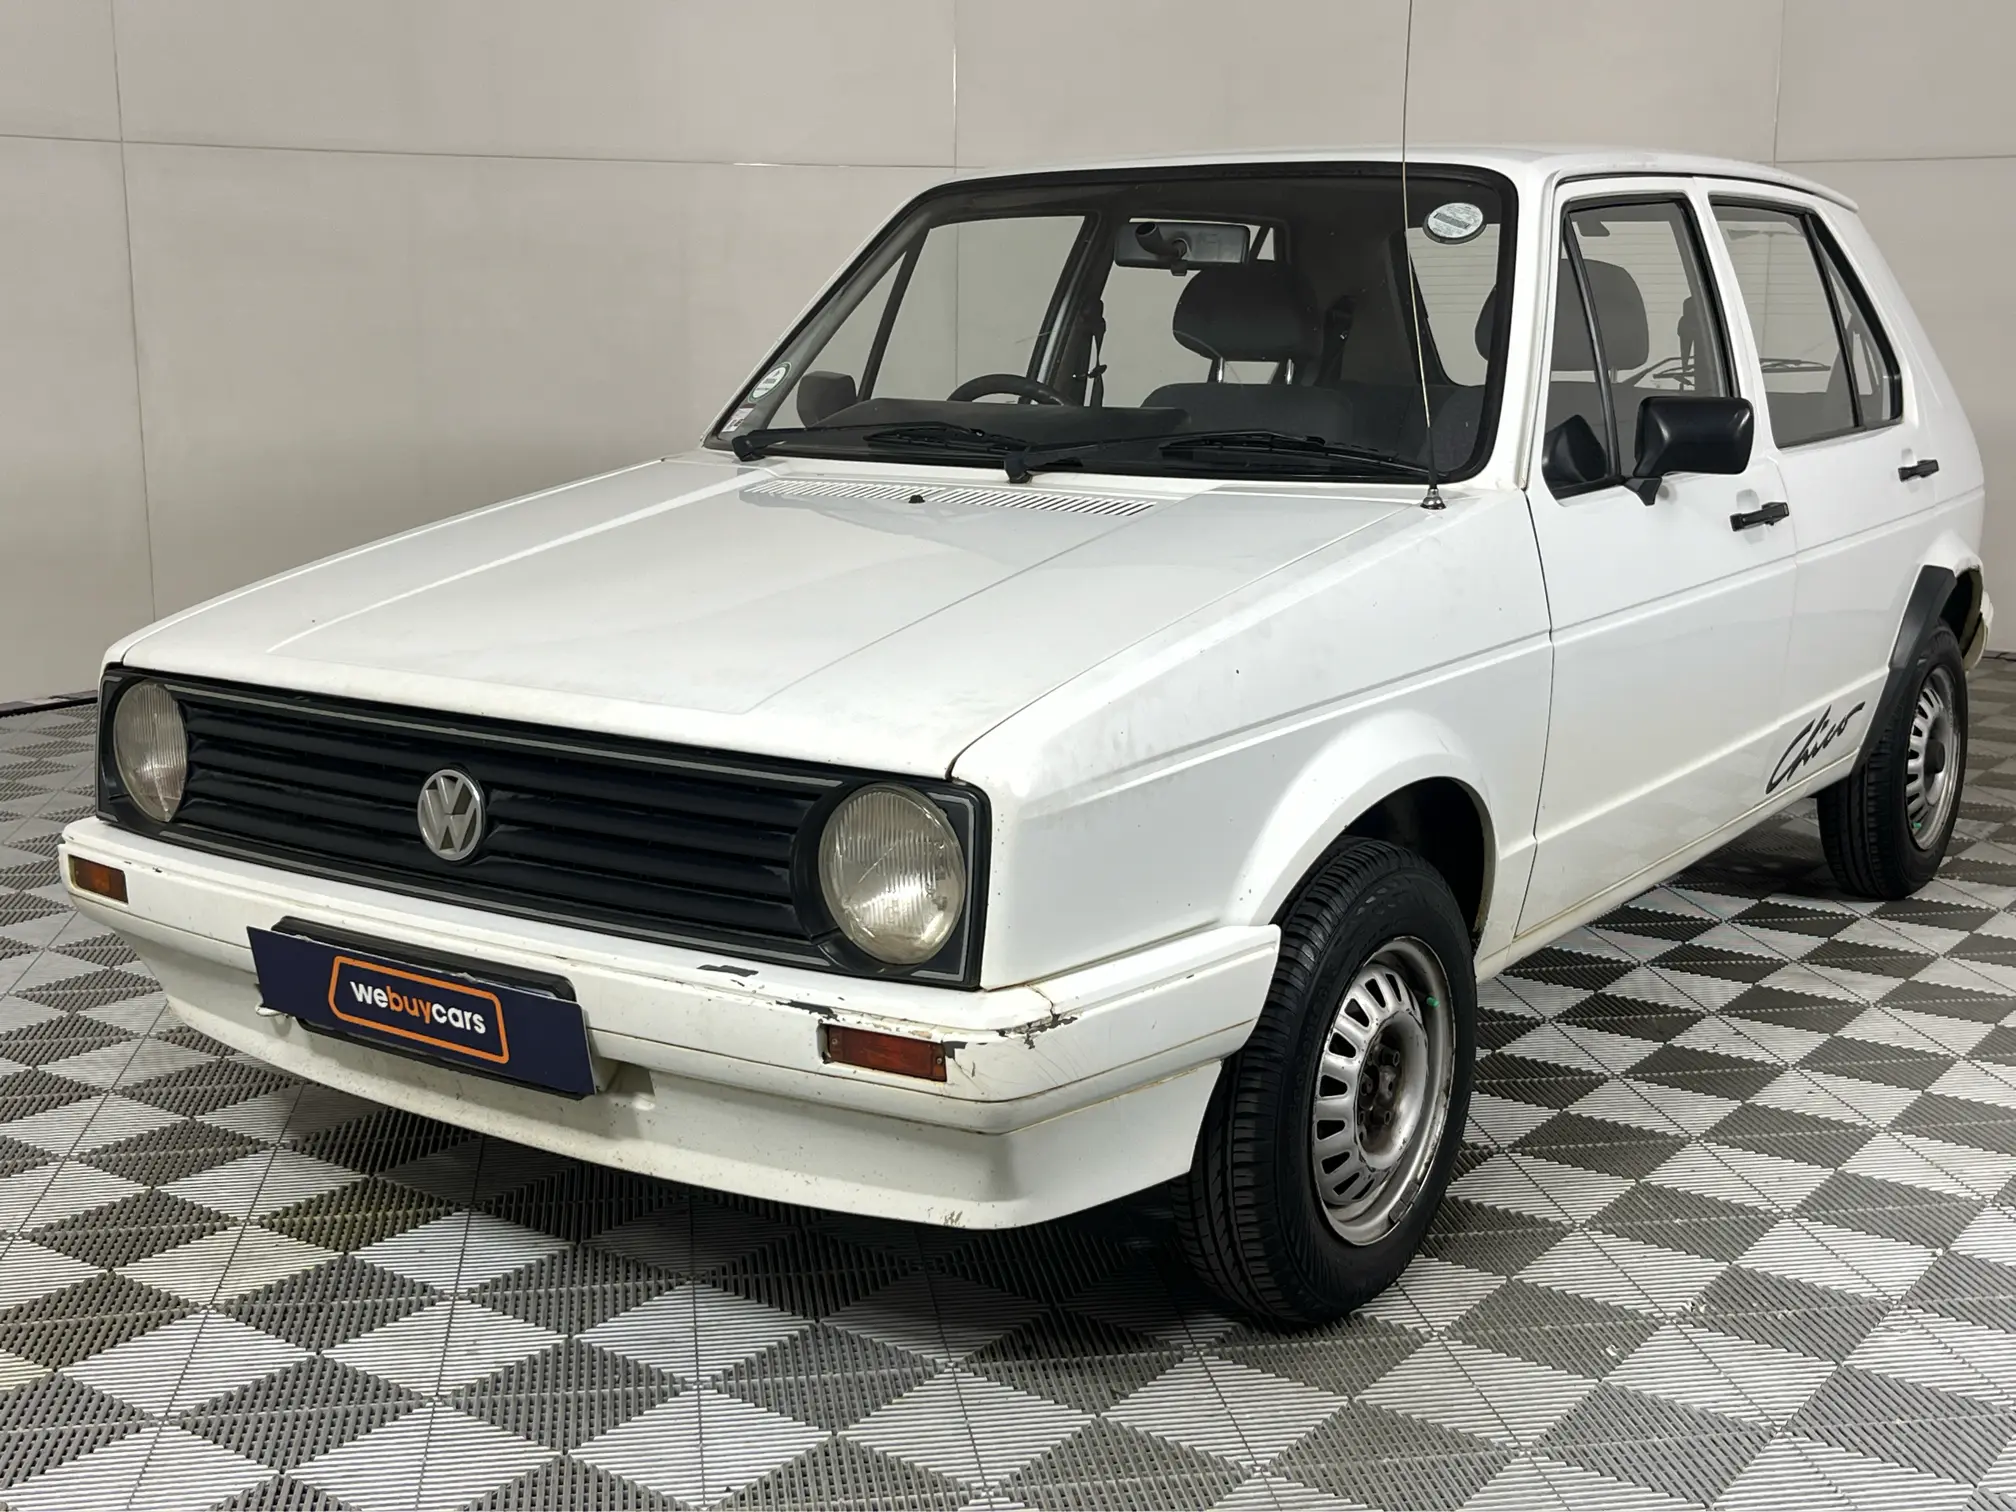 1997 Volkswagen Citi Chico 1.3